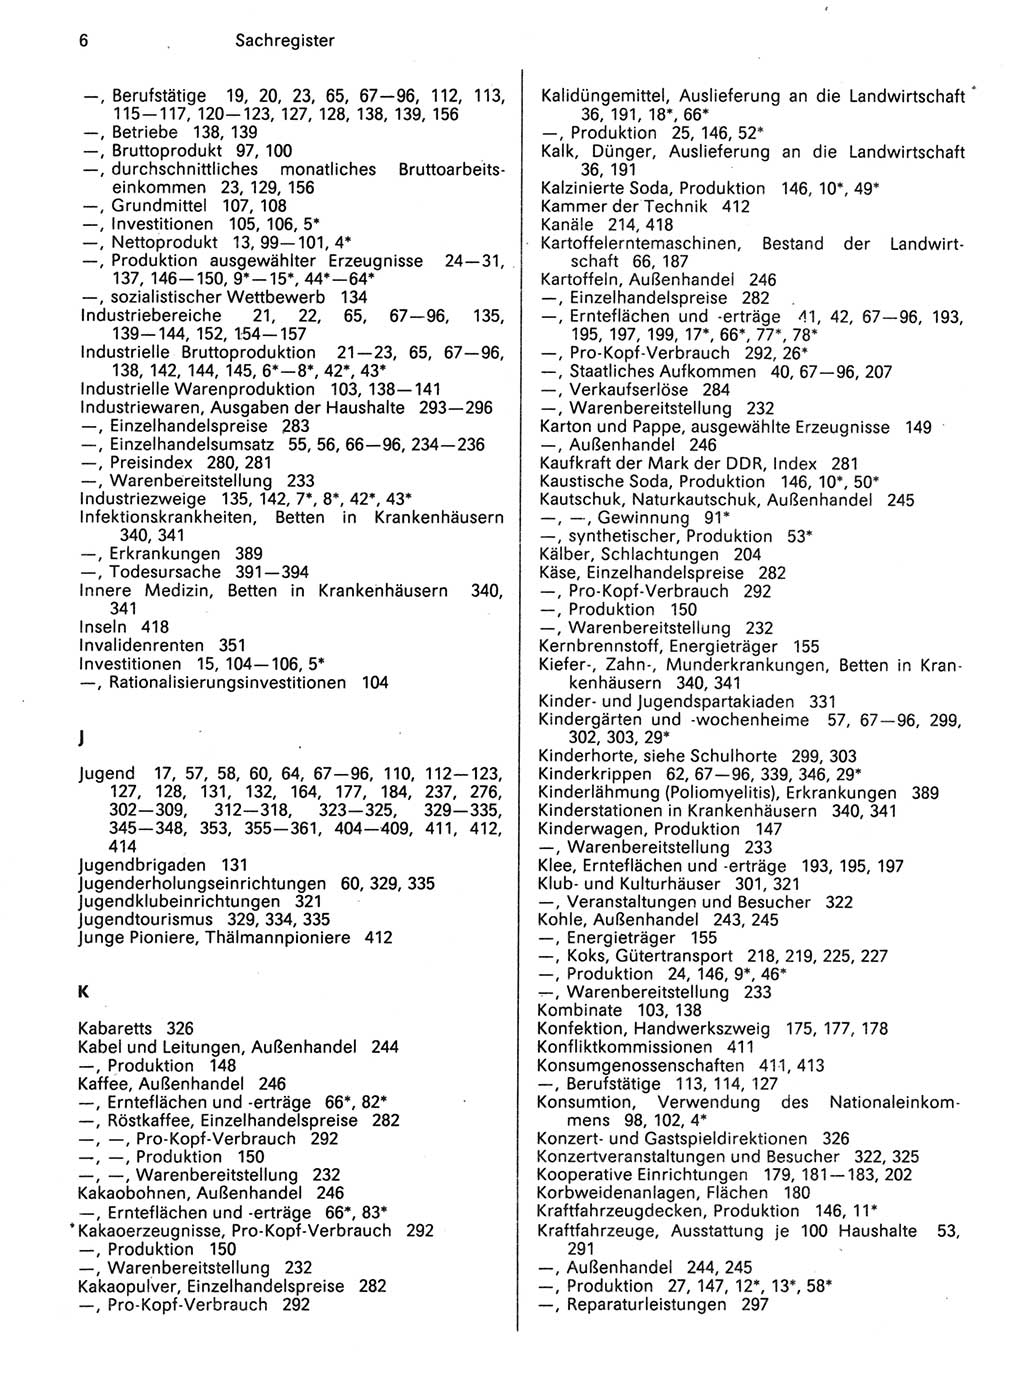 Statistisches Jahrbuch der Deutschen Demokratischen Republik (DDR) 1989, Seite 6 (Stat. Jb. DDR 1989, S. 6)